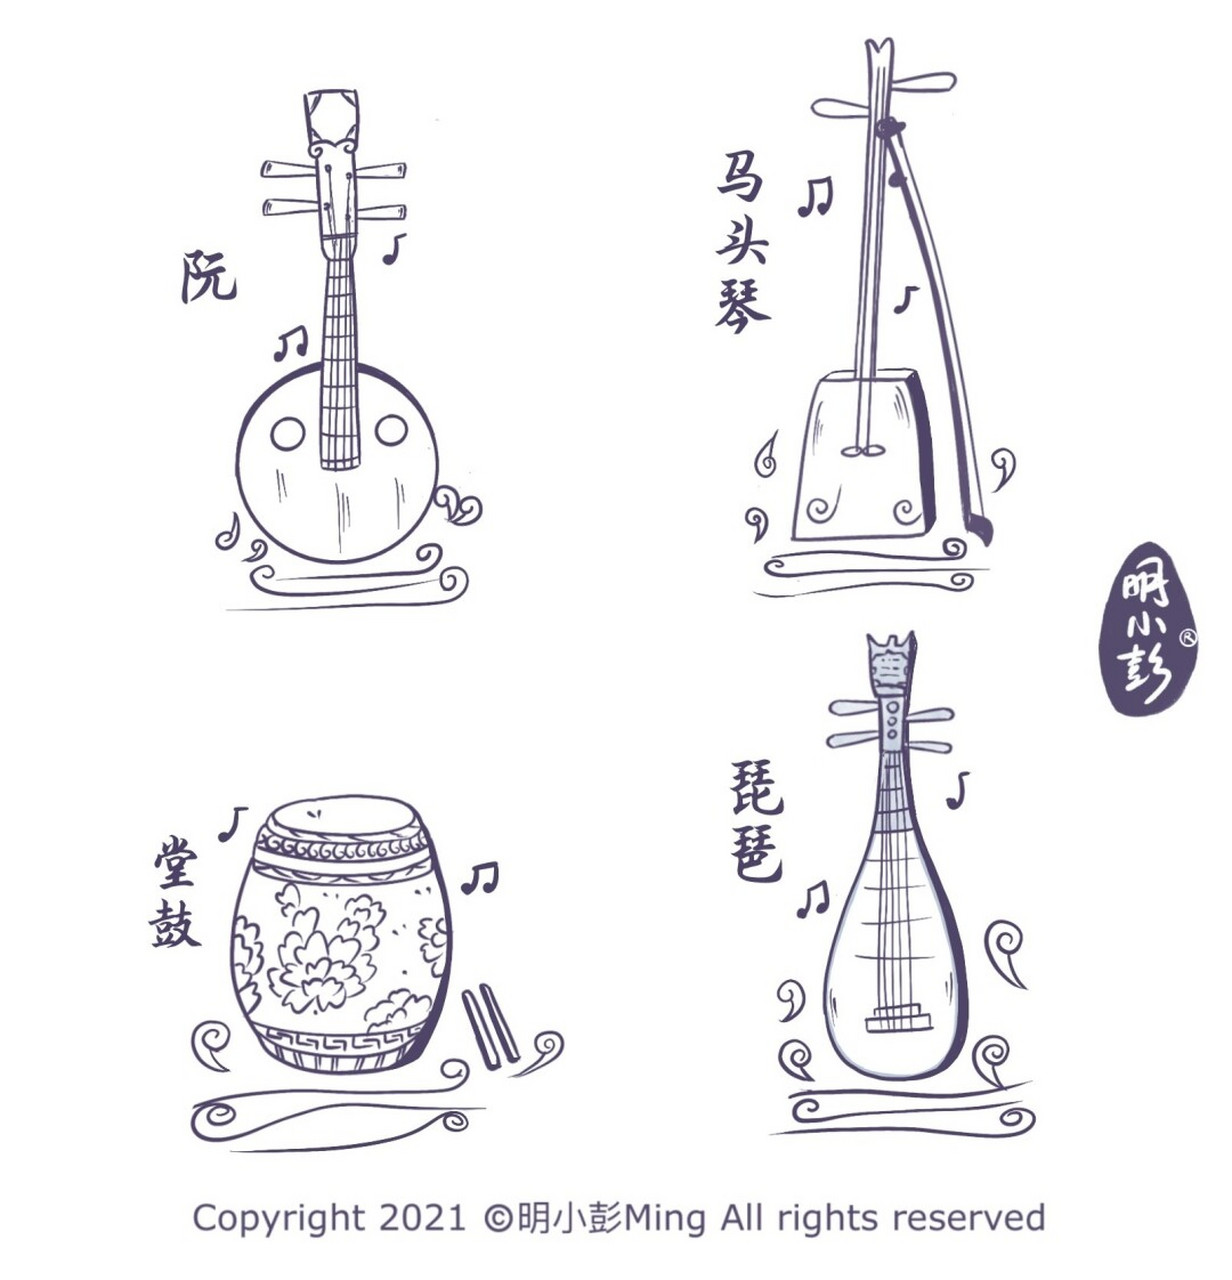 插画练习(51/100)民族乐器速写 中国传统民族乐器速写 硬件:ipadpro